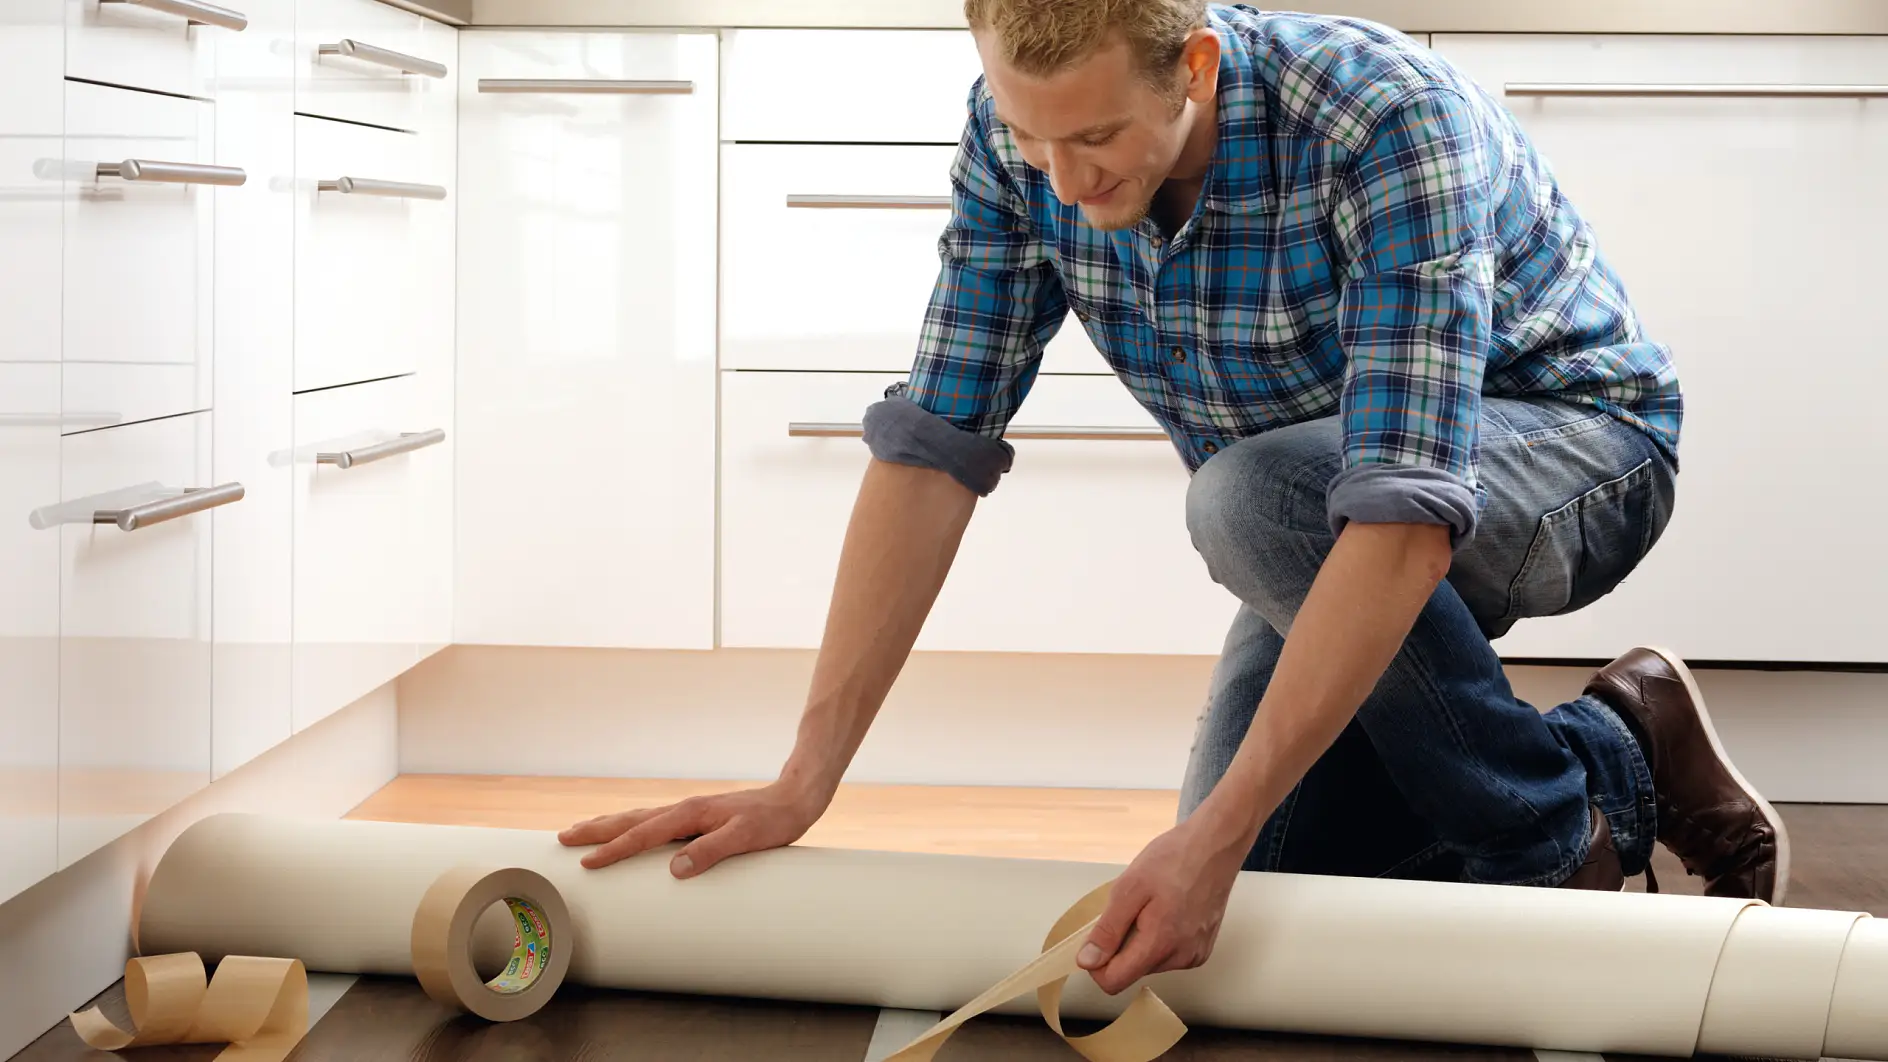 Taśma do wykładzin / taśma podłogowa – idealne rozwiązanie do mocowania dywanów i wykładzin